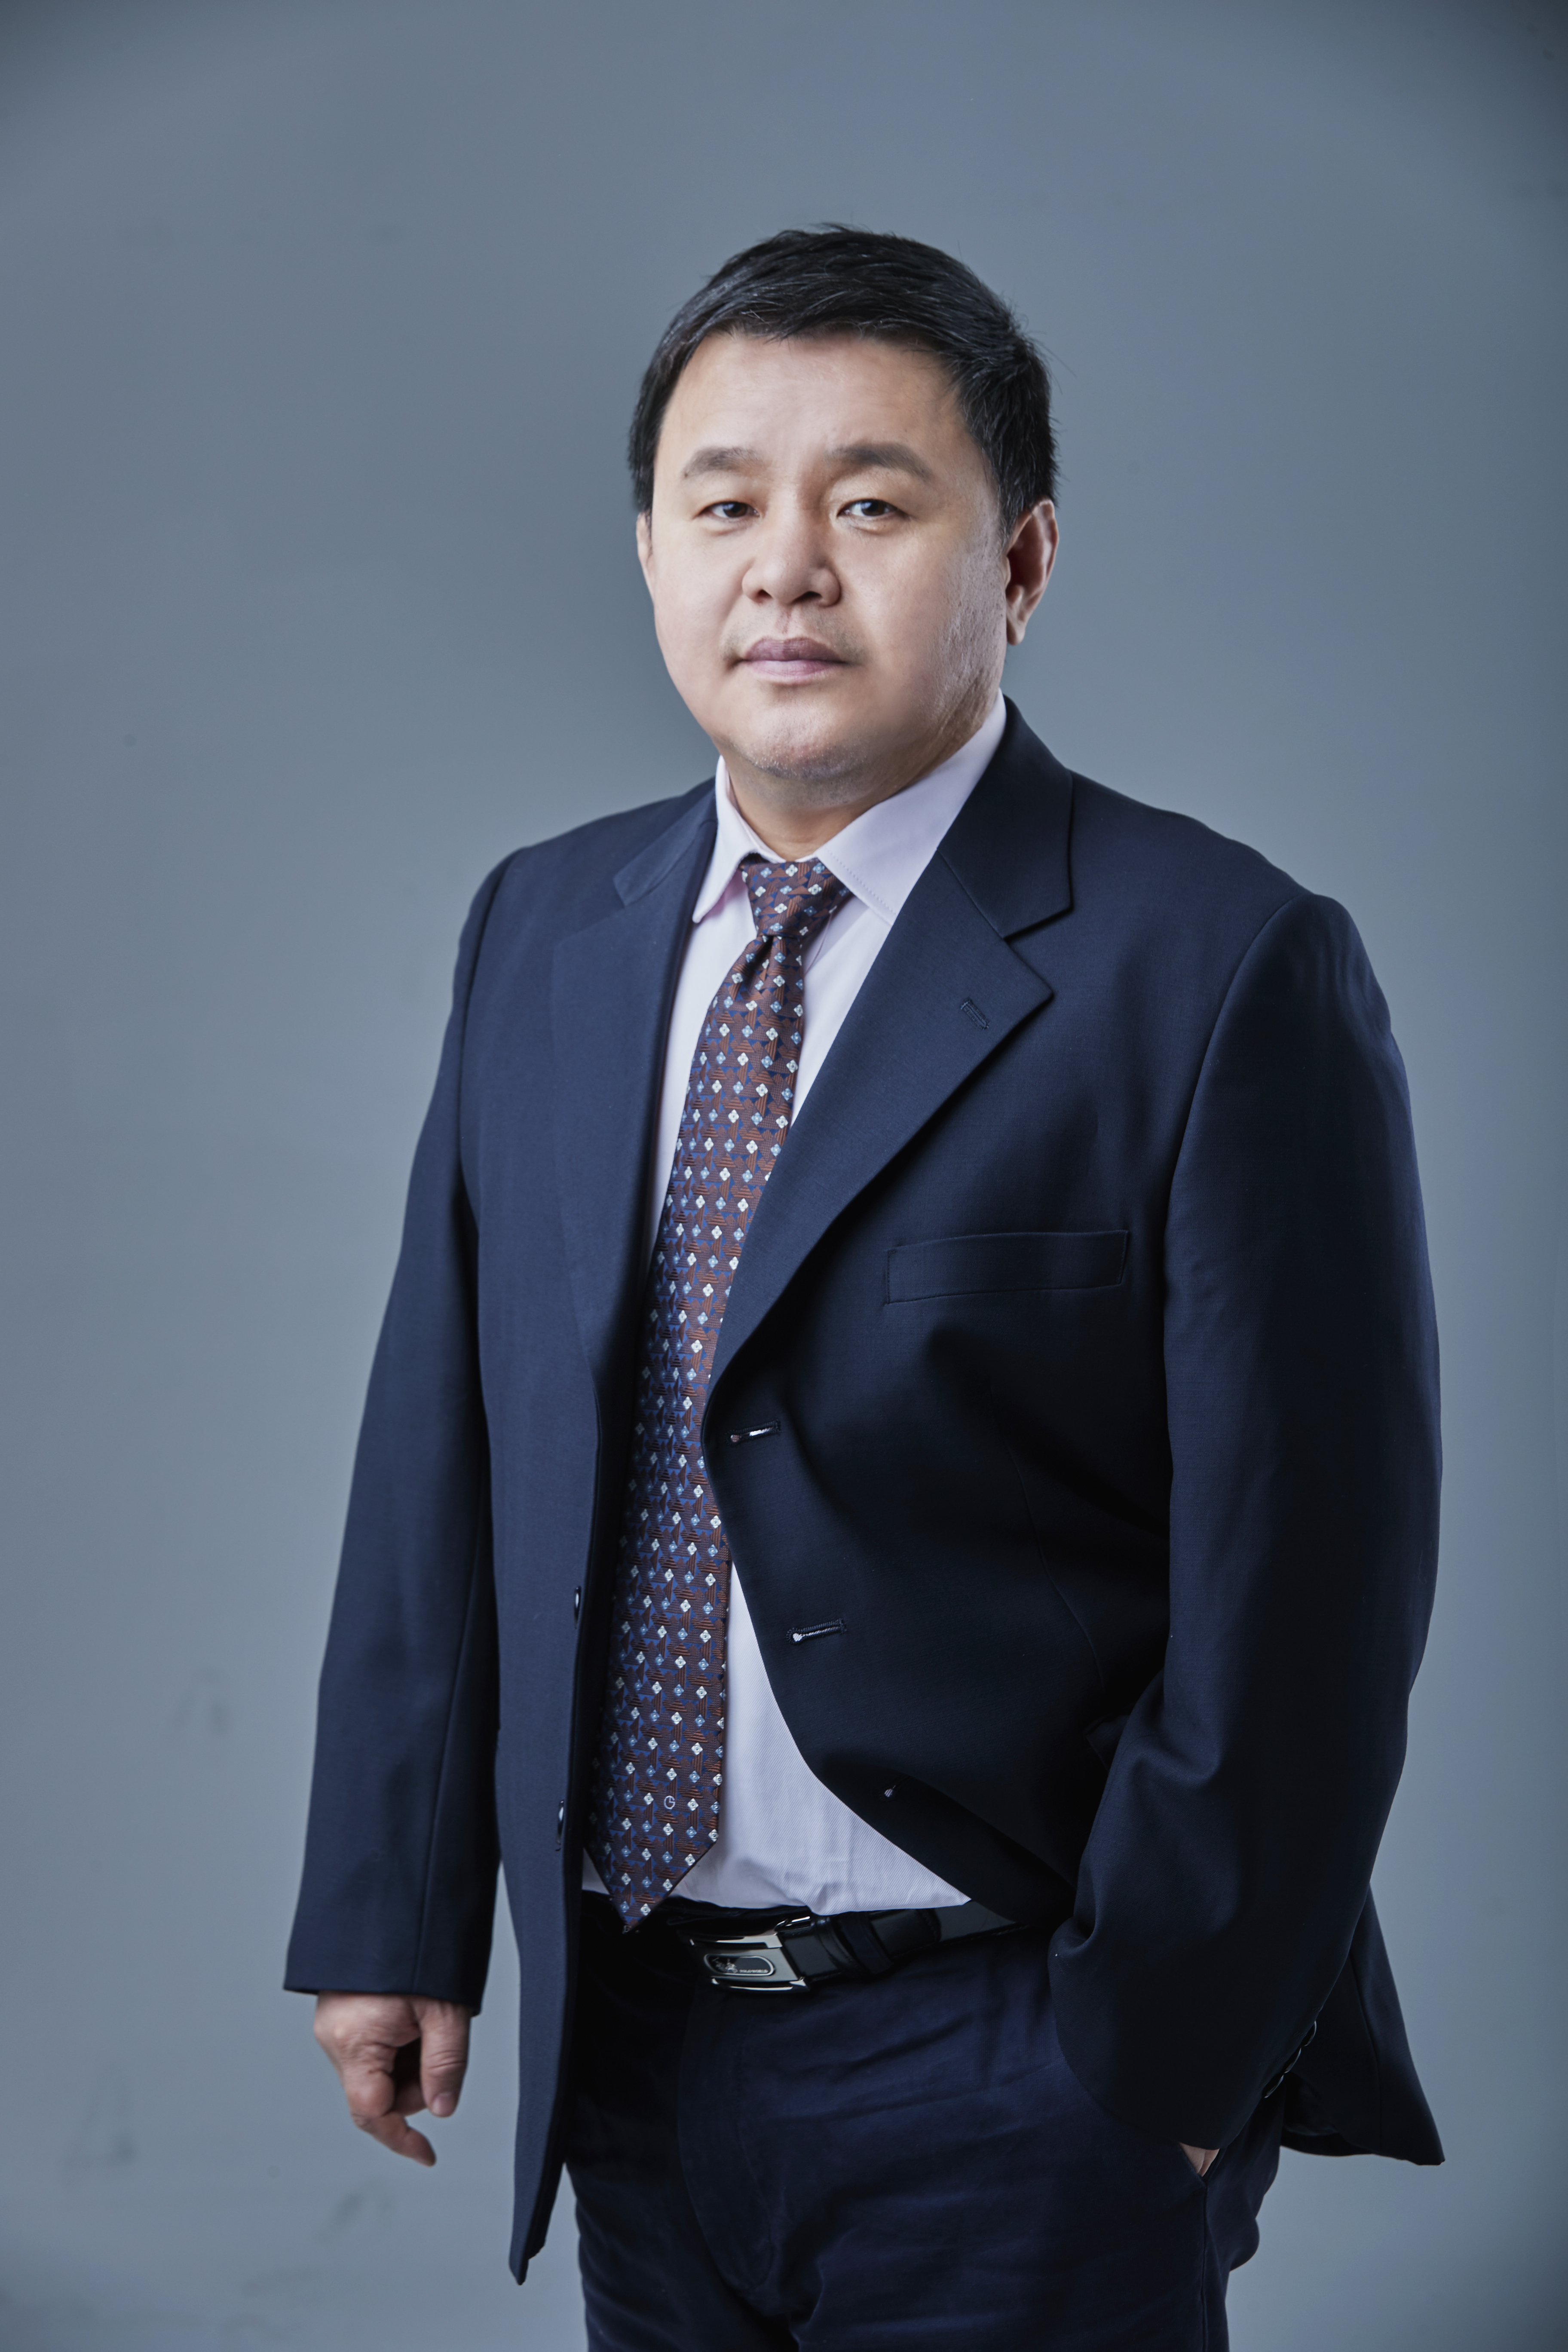 Mr. Dong Jiang